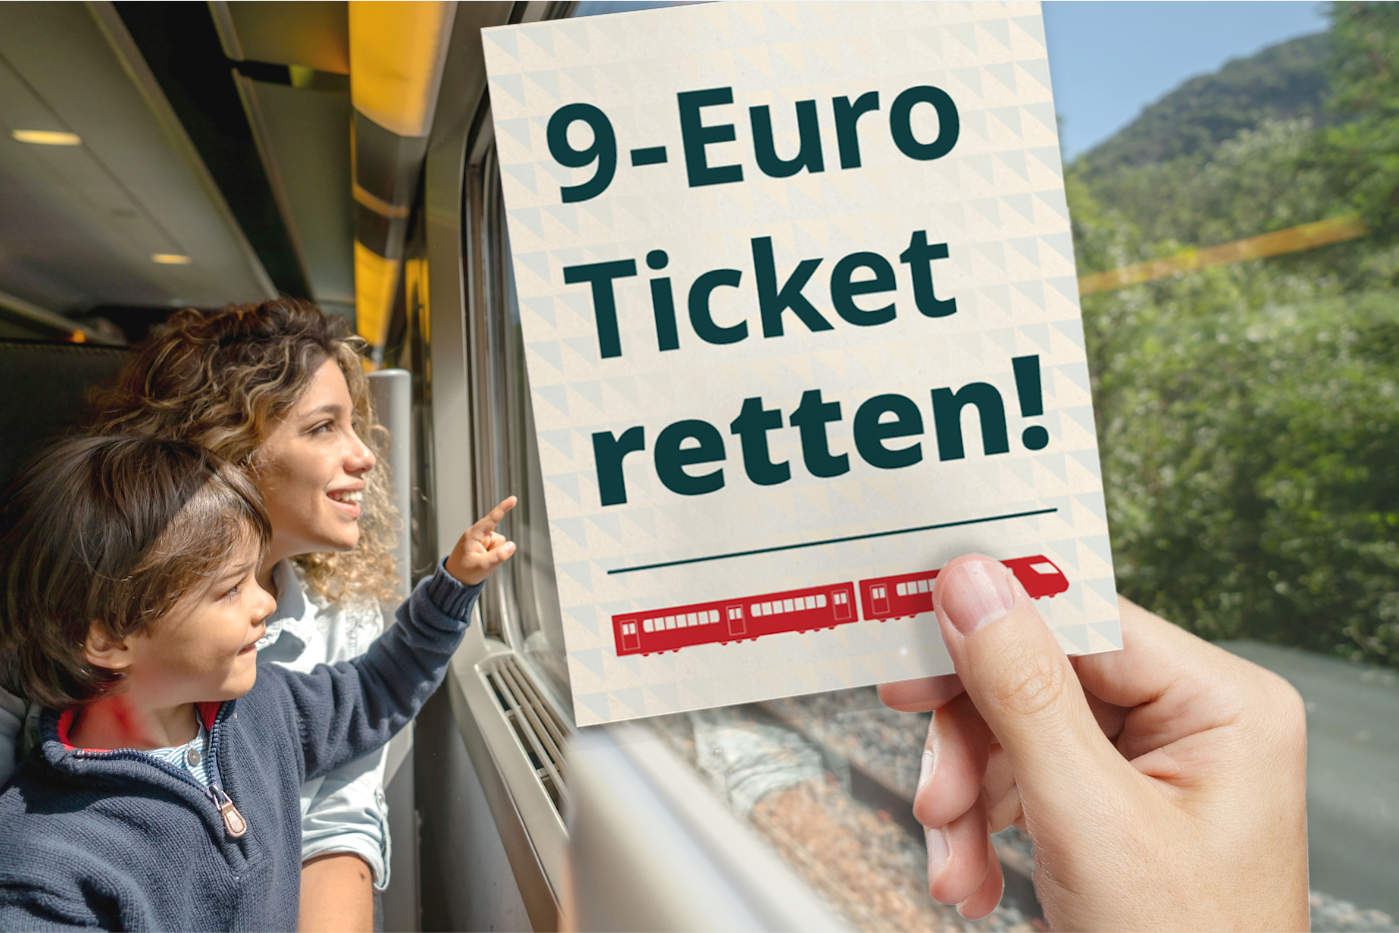 Eine Person sitzt im Zug, auf dem Schoß ein Kleinkind. Im Vordergrund hält eine Hand ein Ticket auf dem steht "9-Euro-Ticket retten!"